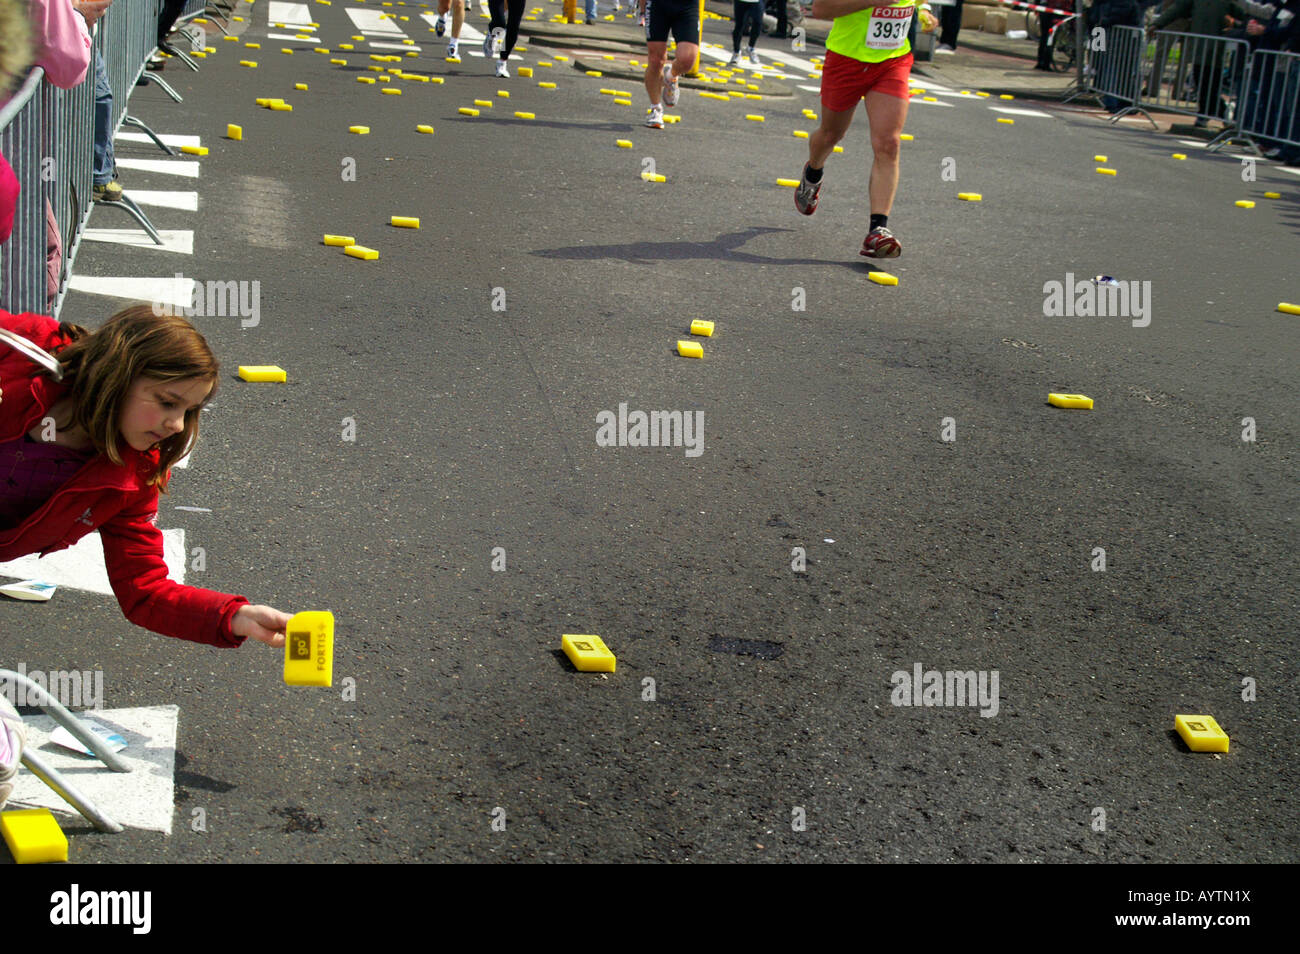 Girl picking éponge rafraîchir jaune à Rotterdam ville rue de marathon race 13 avril 2008 Pays-Bas Banque D'Images